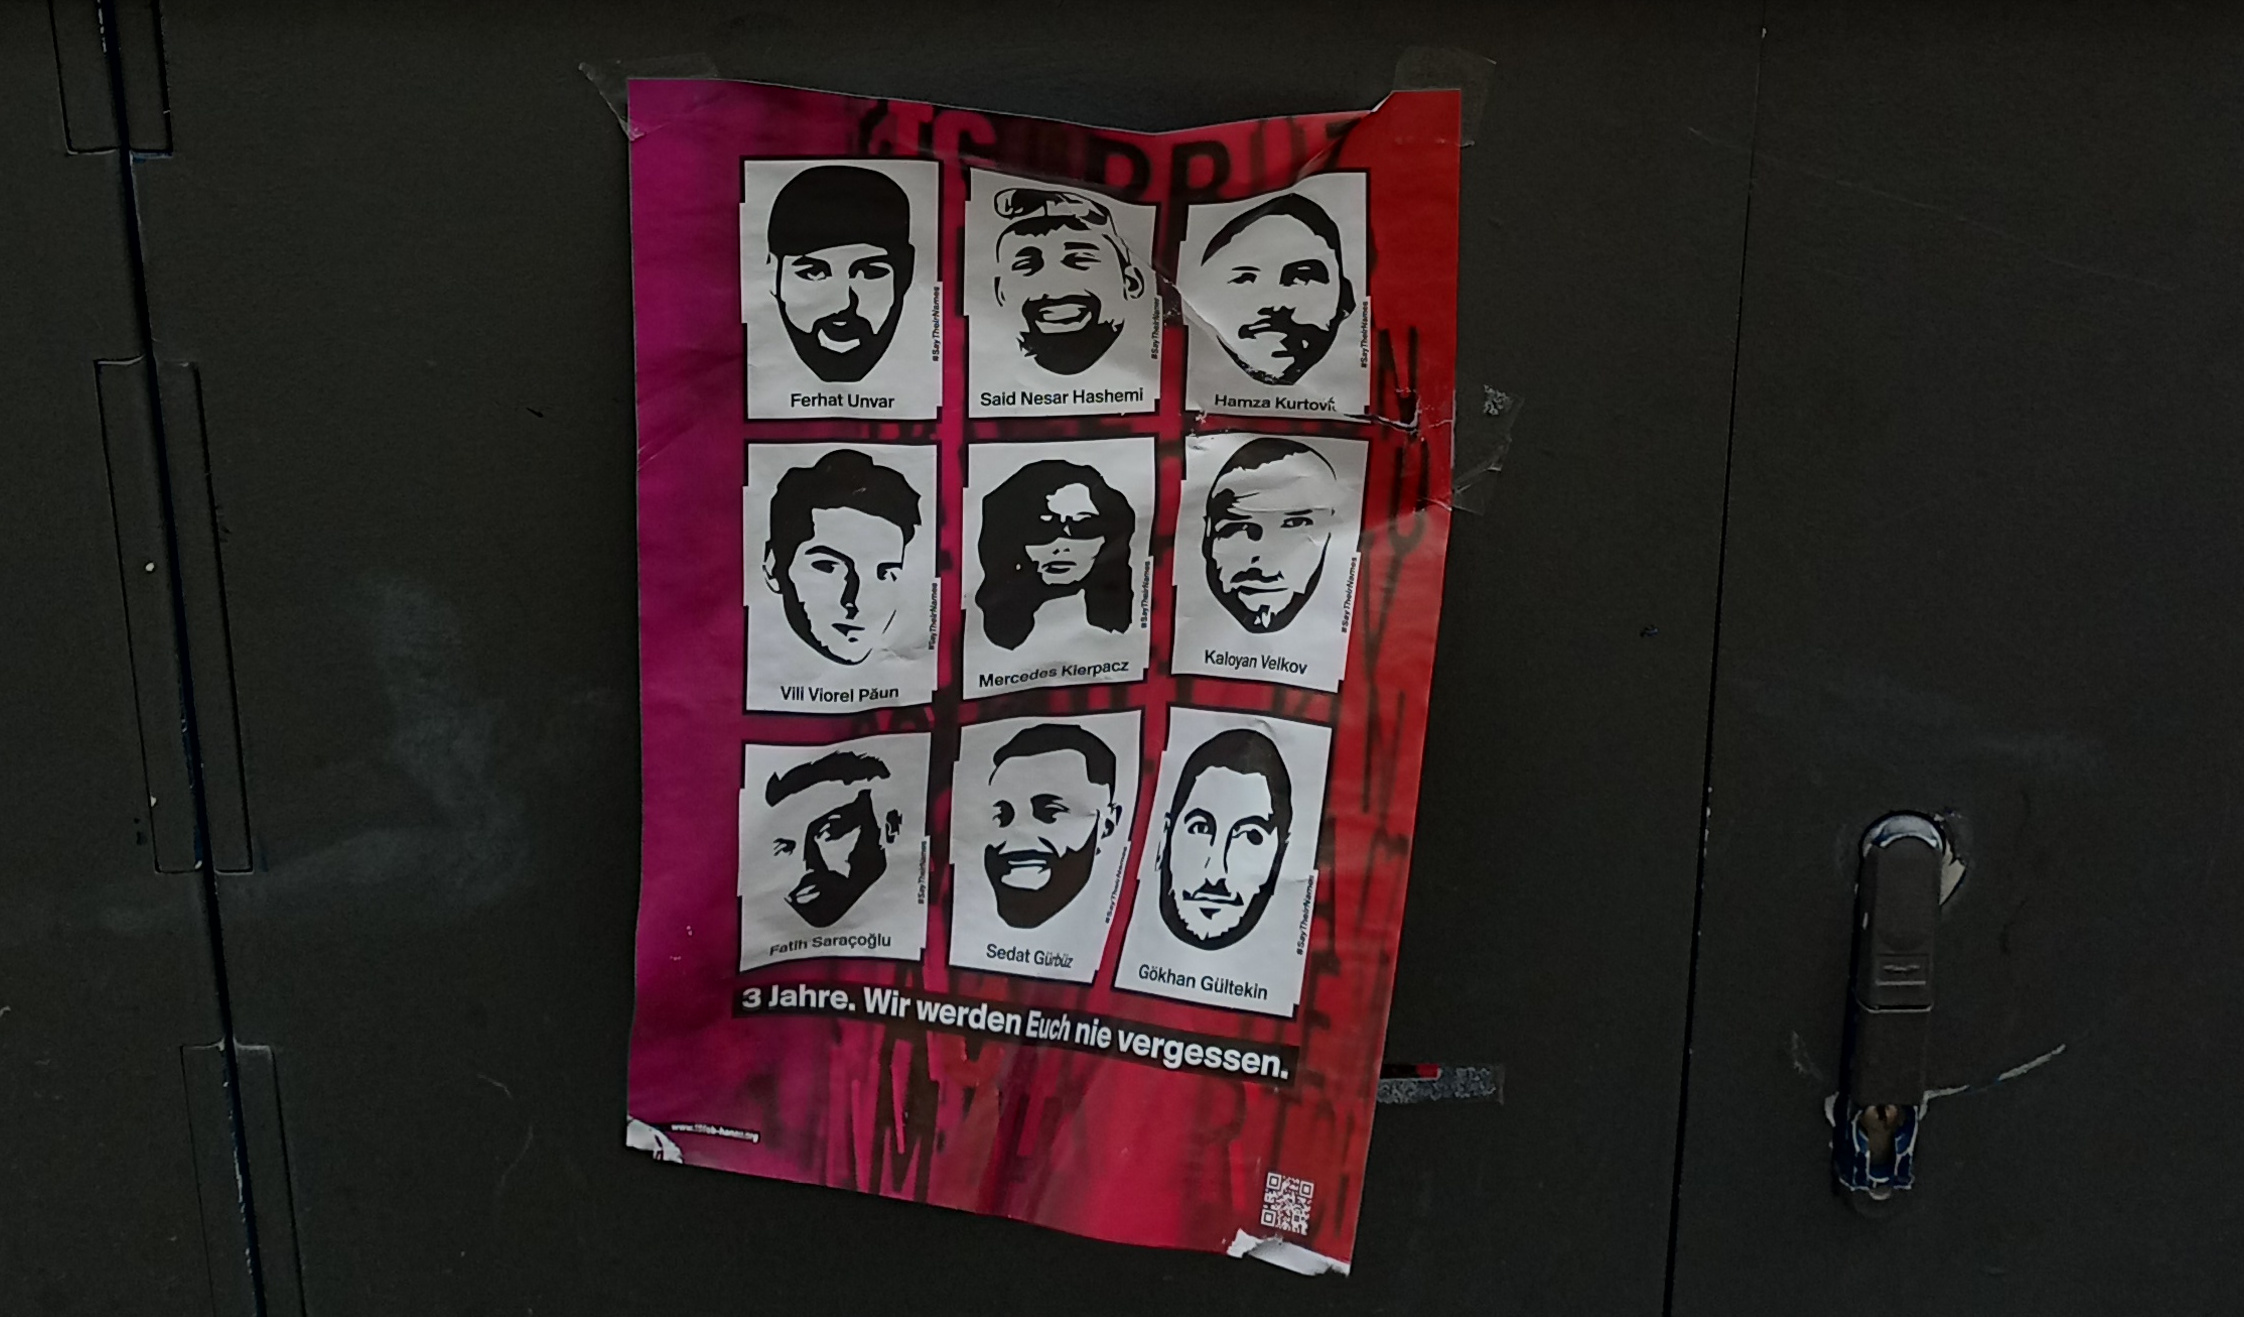 Ein Poster mit Bildern der neun Opfer des Hanauer Anschlags und dem Satz "3 Jahre. Wir werden euch nie vergessen." darunter.